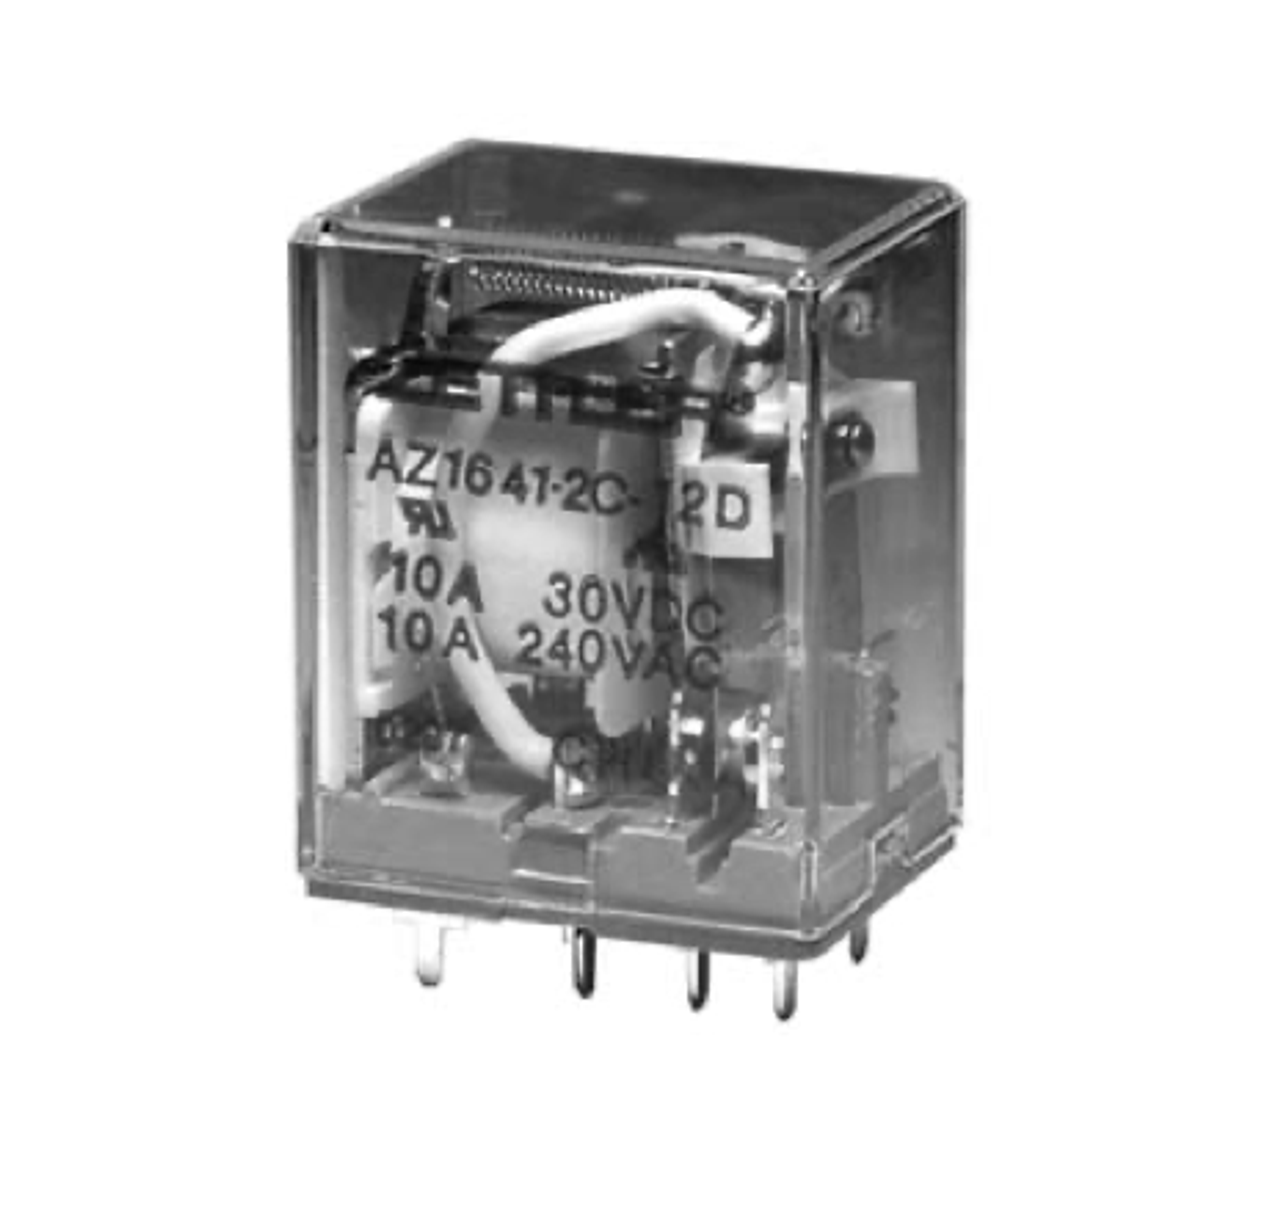 American Zettler AZ1641-3C-24A Power Relay